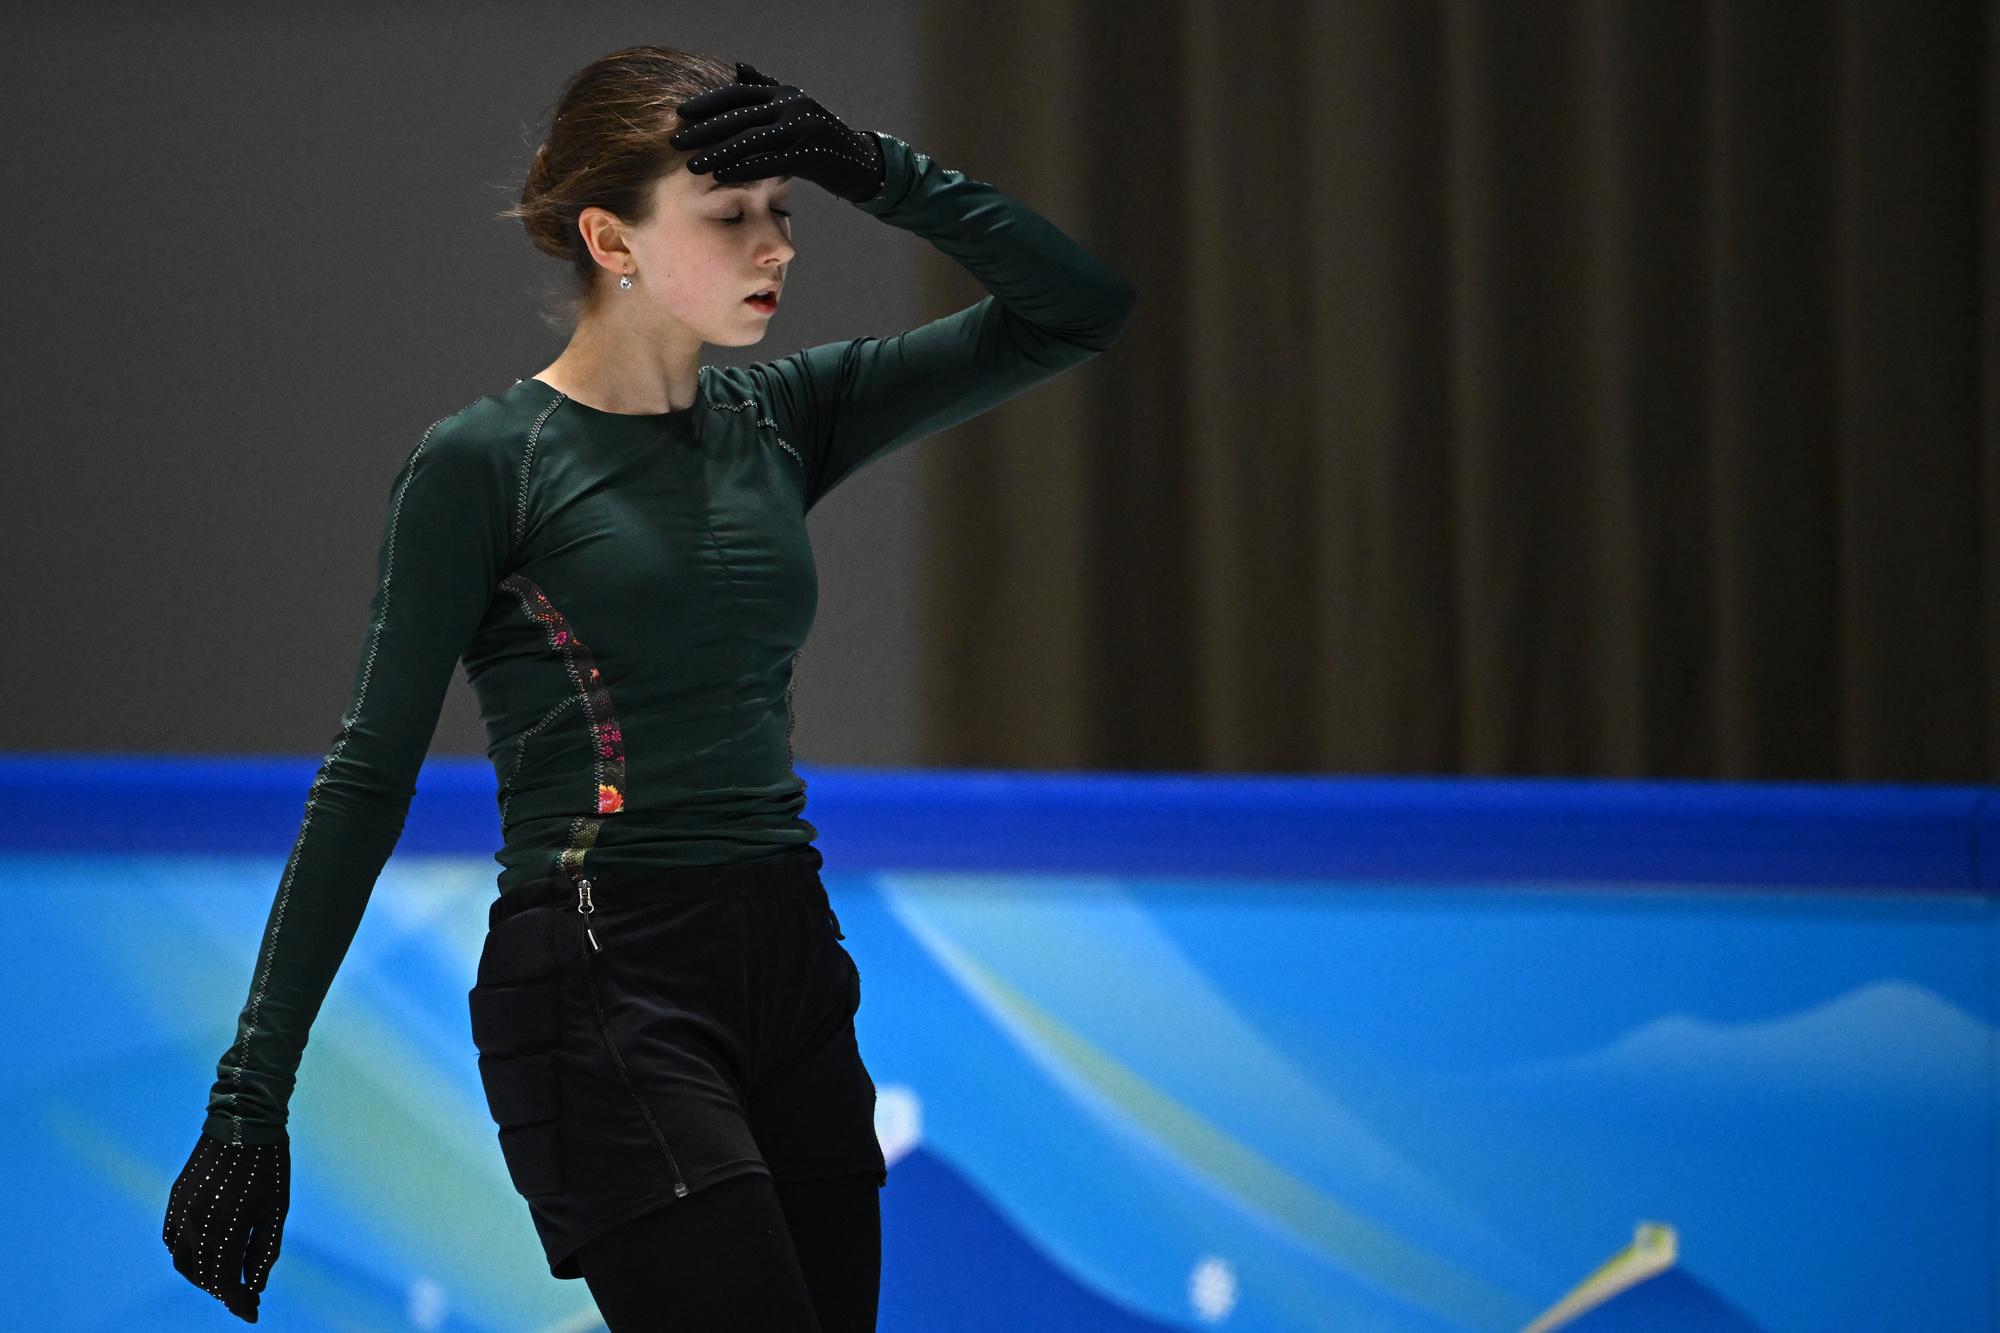 Kamila Valieva trainde vandaag, maar had het zichtbaar niet makkelijk.